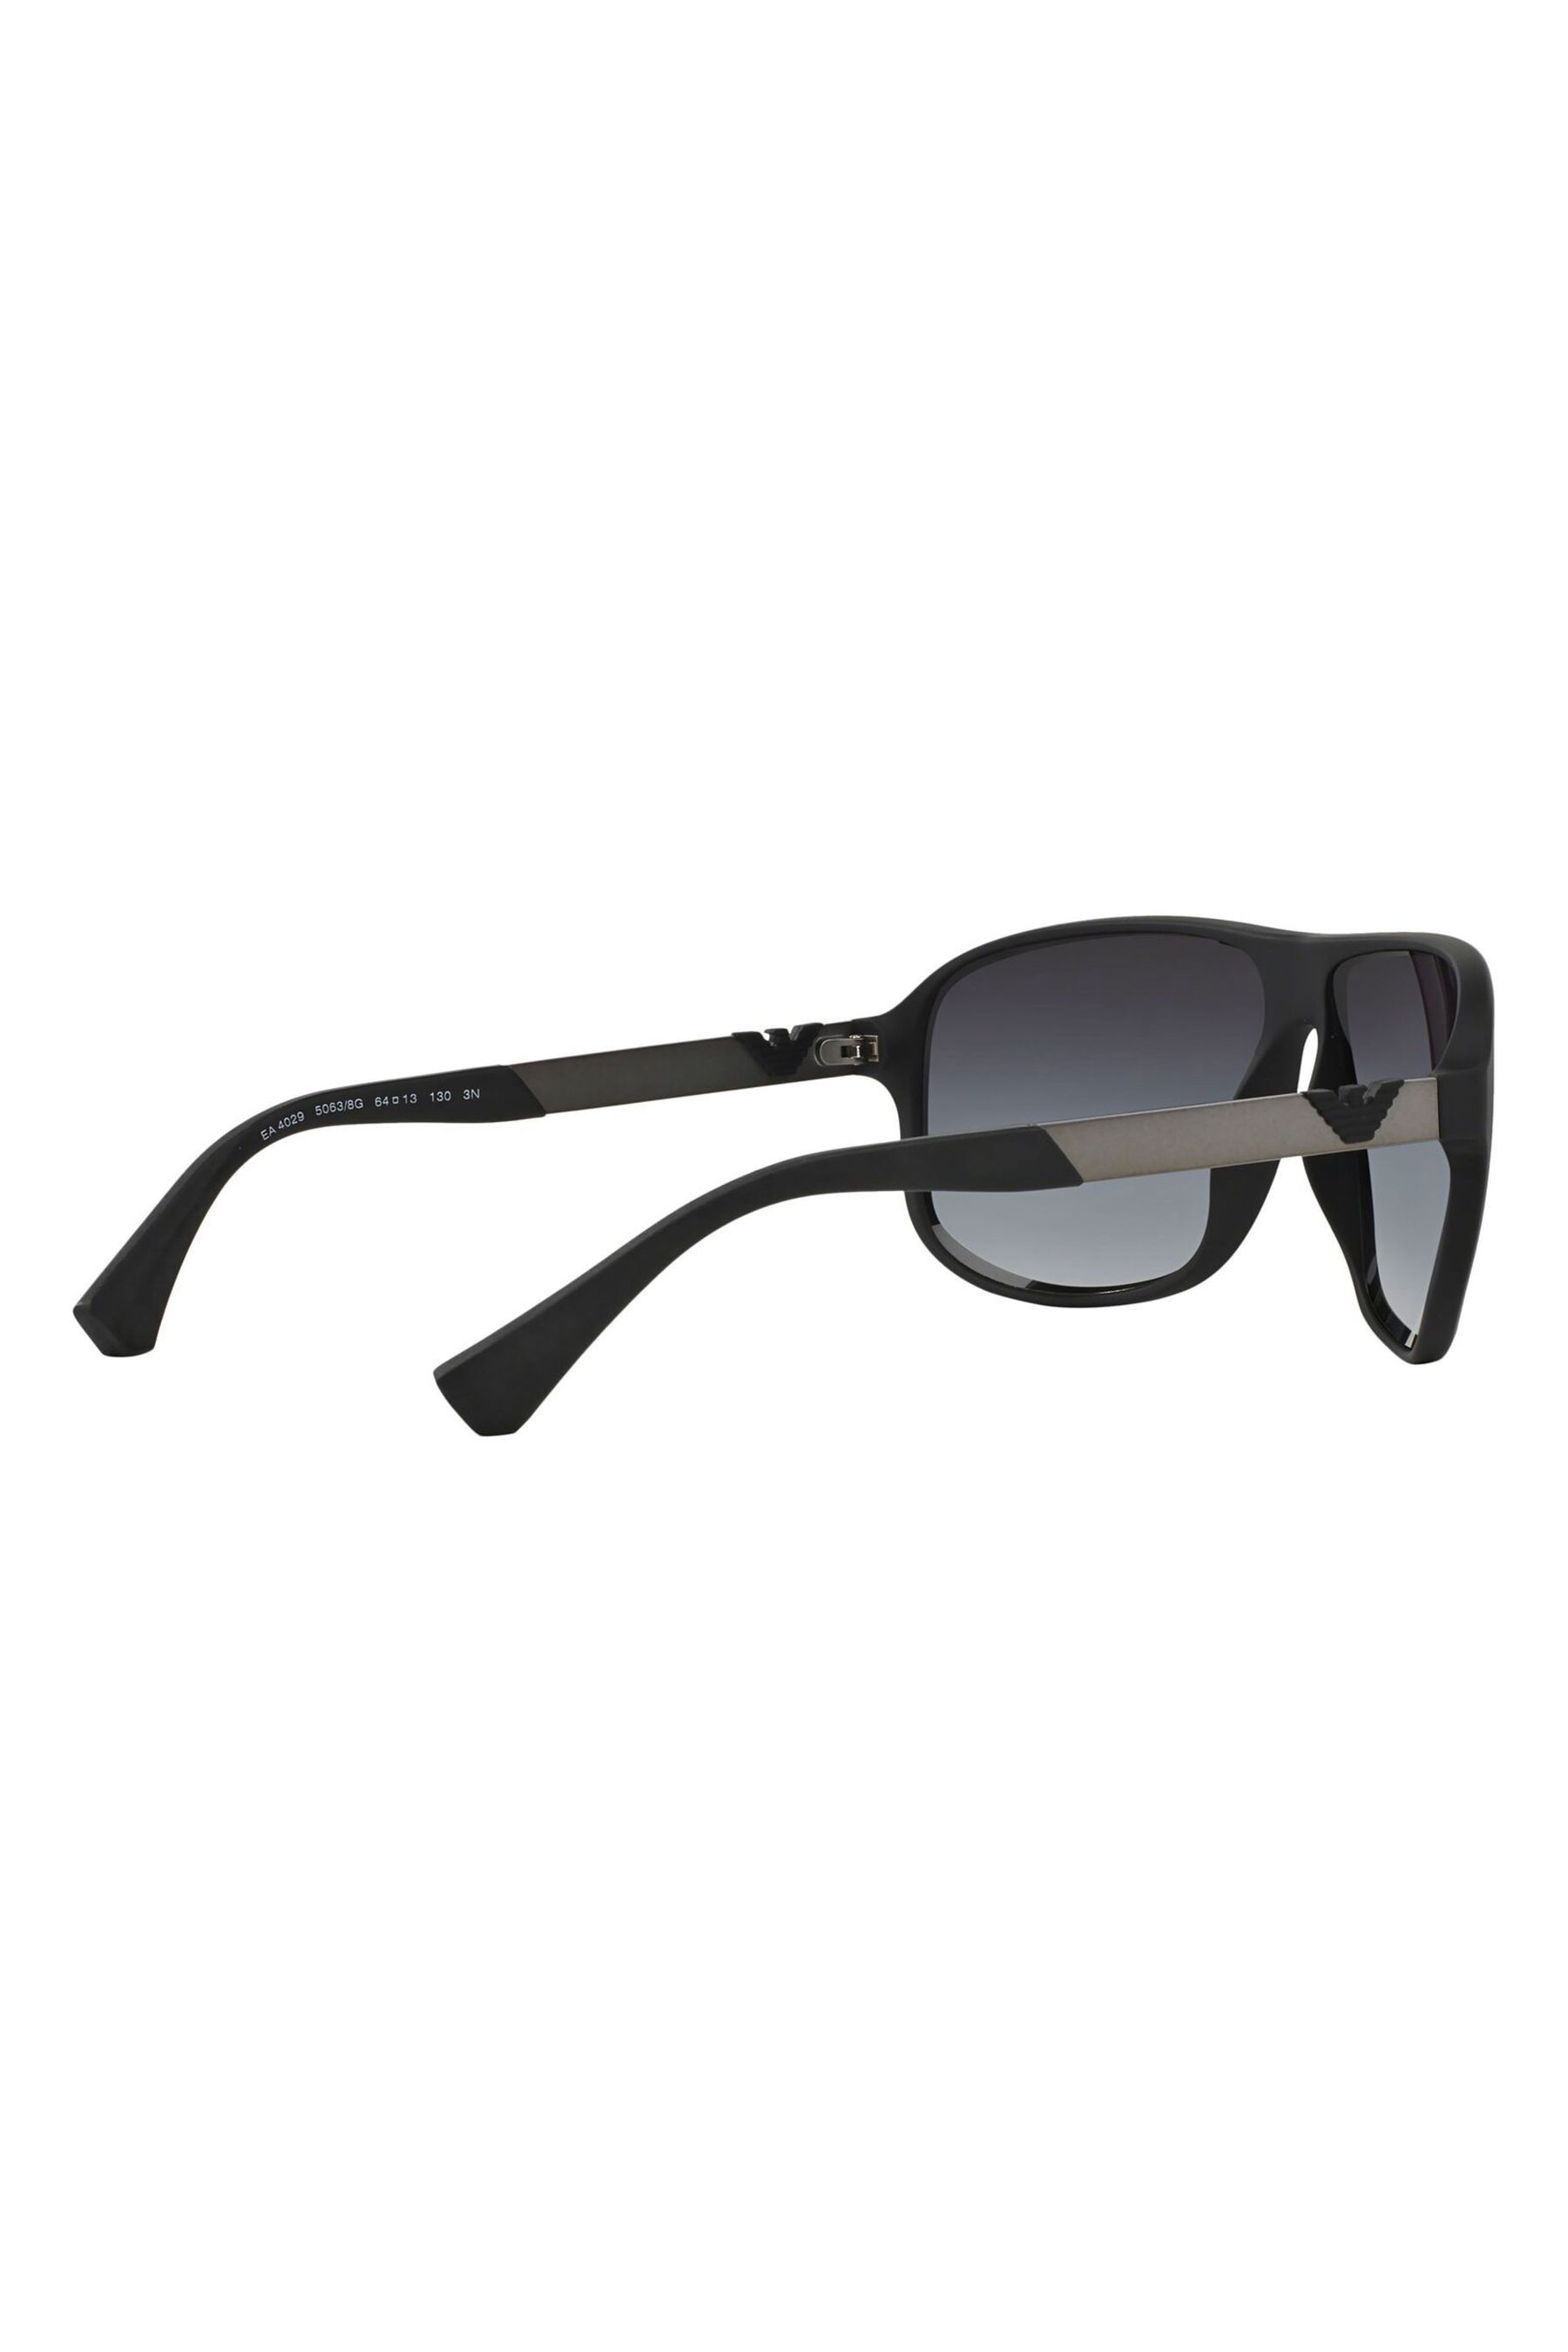 Emporio Armani Men's Sunglasses, Black/Grey (50638G), 56 : Amazon.co.uk:  Fashion